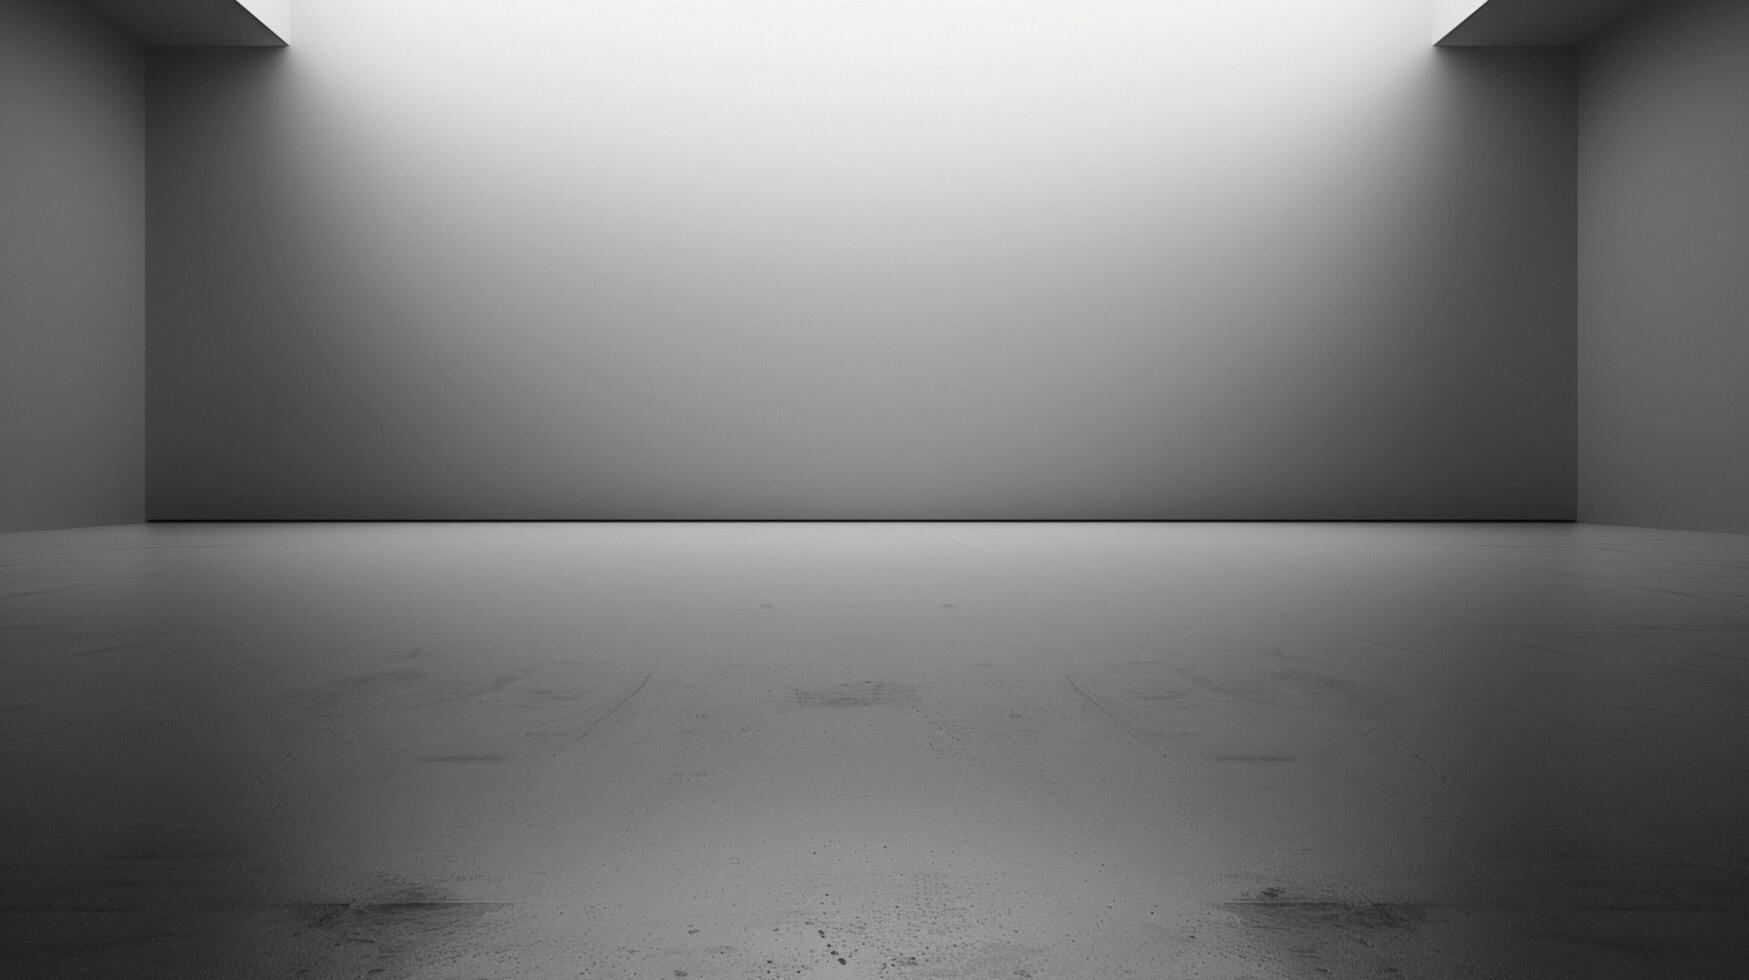 abstrakt tömma mörk vit grå lutning foto